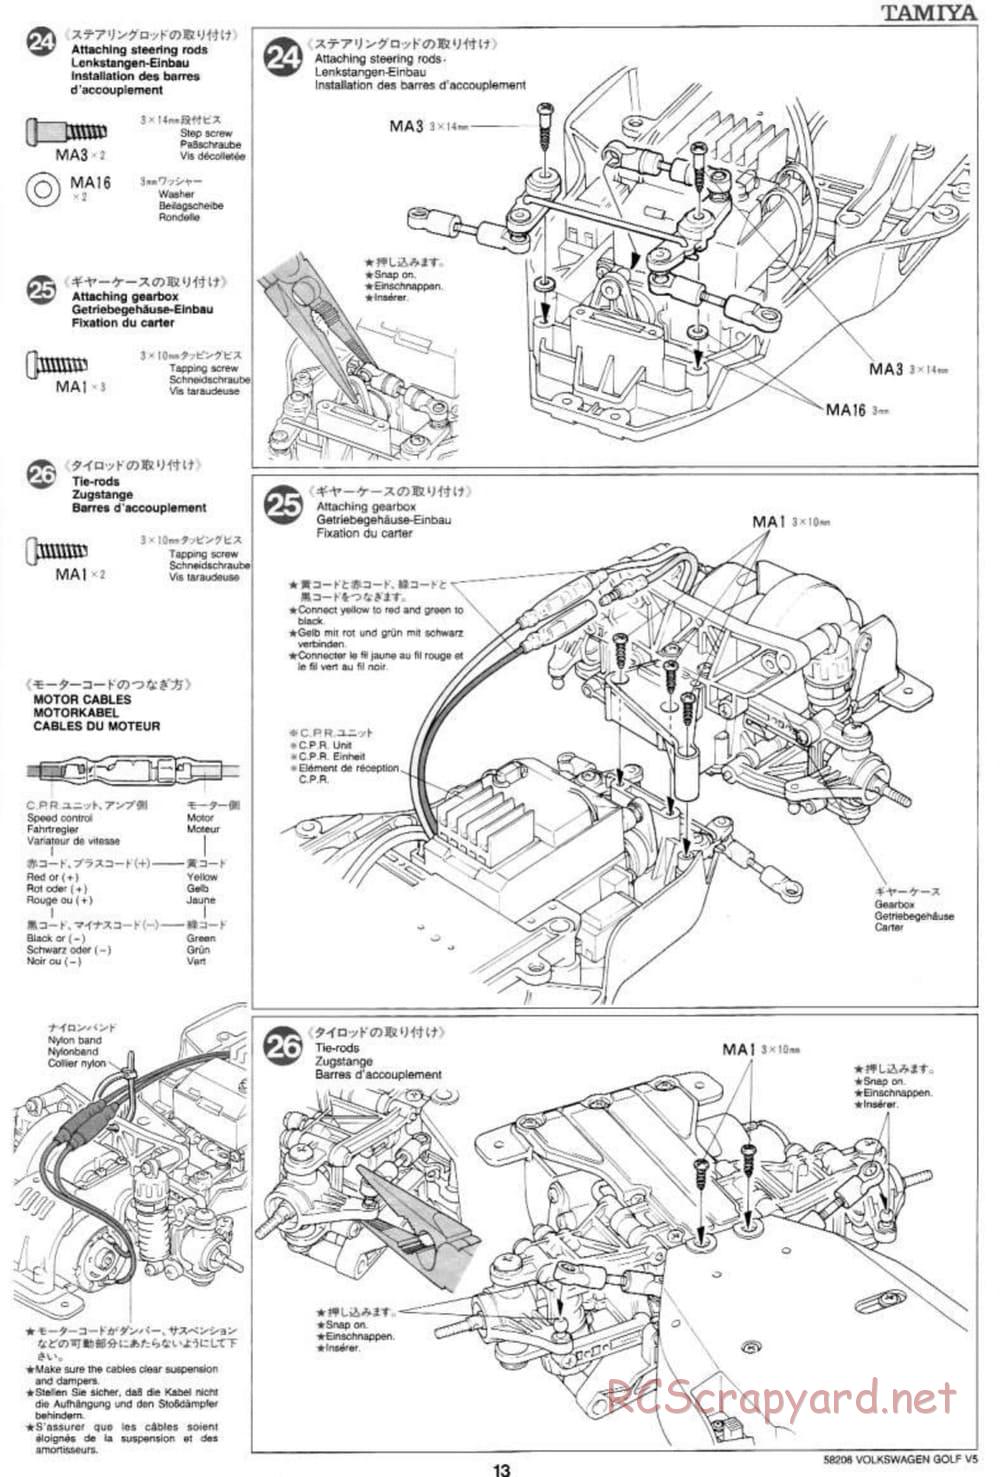 Tamiya - Volkswagen Golf V5 - FF-01 Chassis - Manual - Page 13